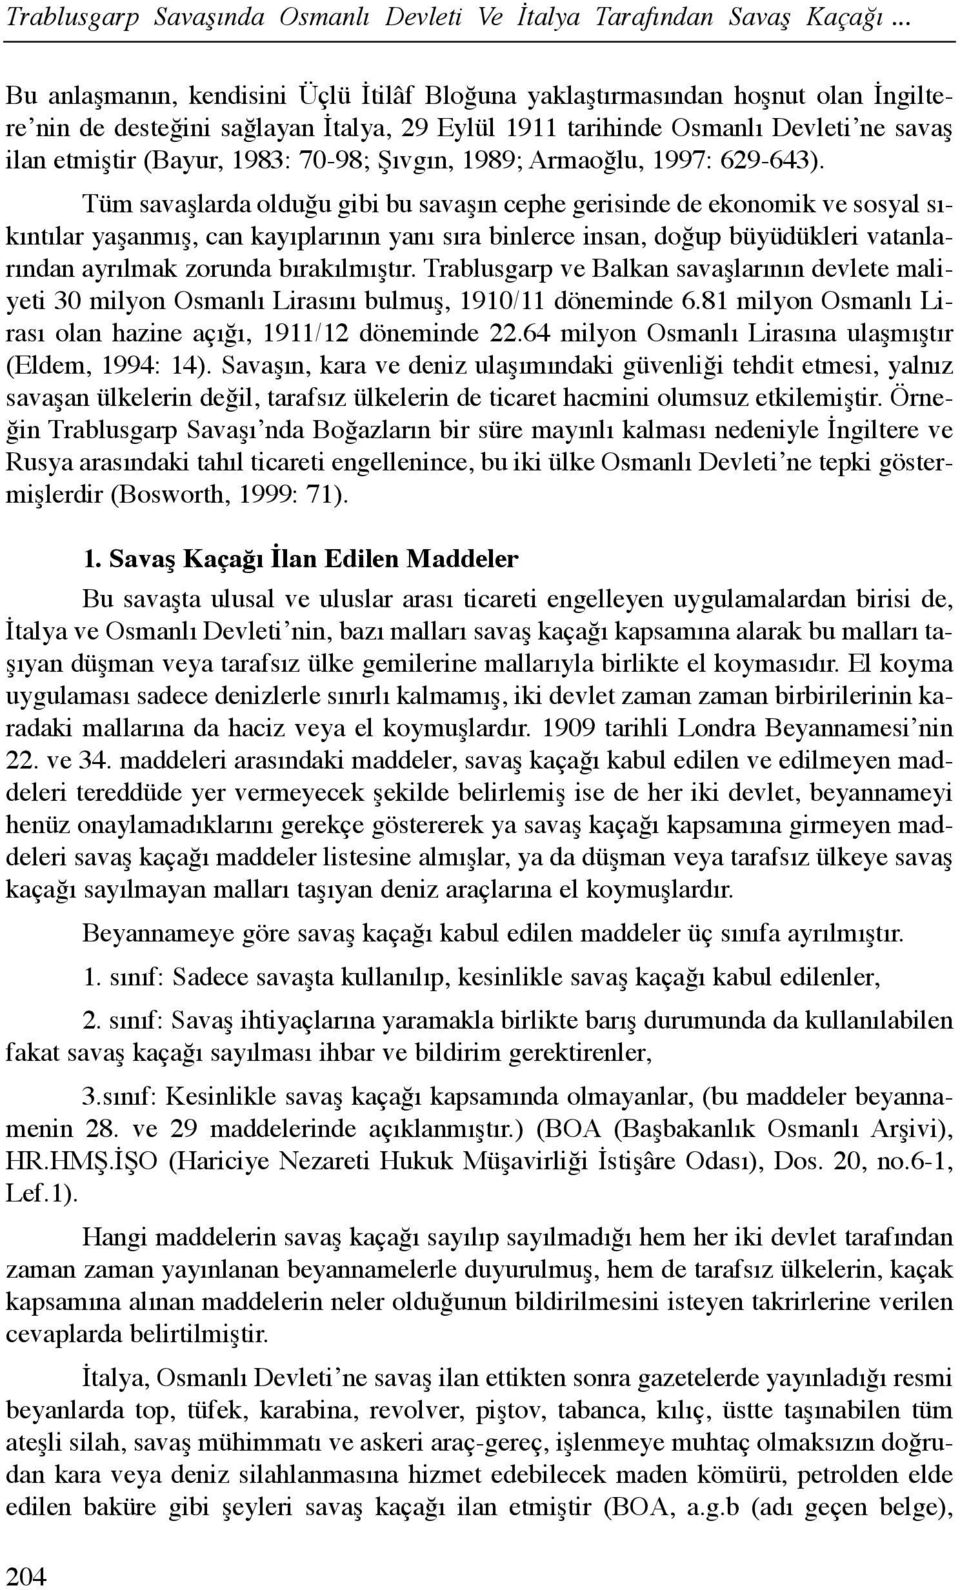 70-98; Şõvgõn, 1989; Armaoğlu, 1997: 629-643).